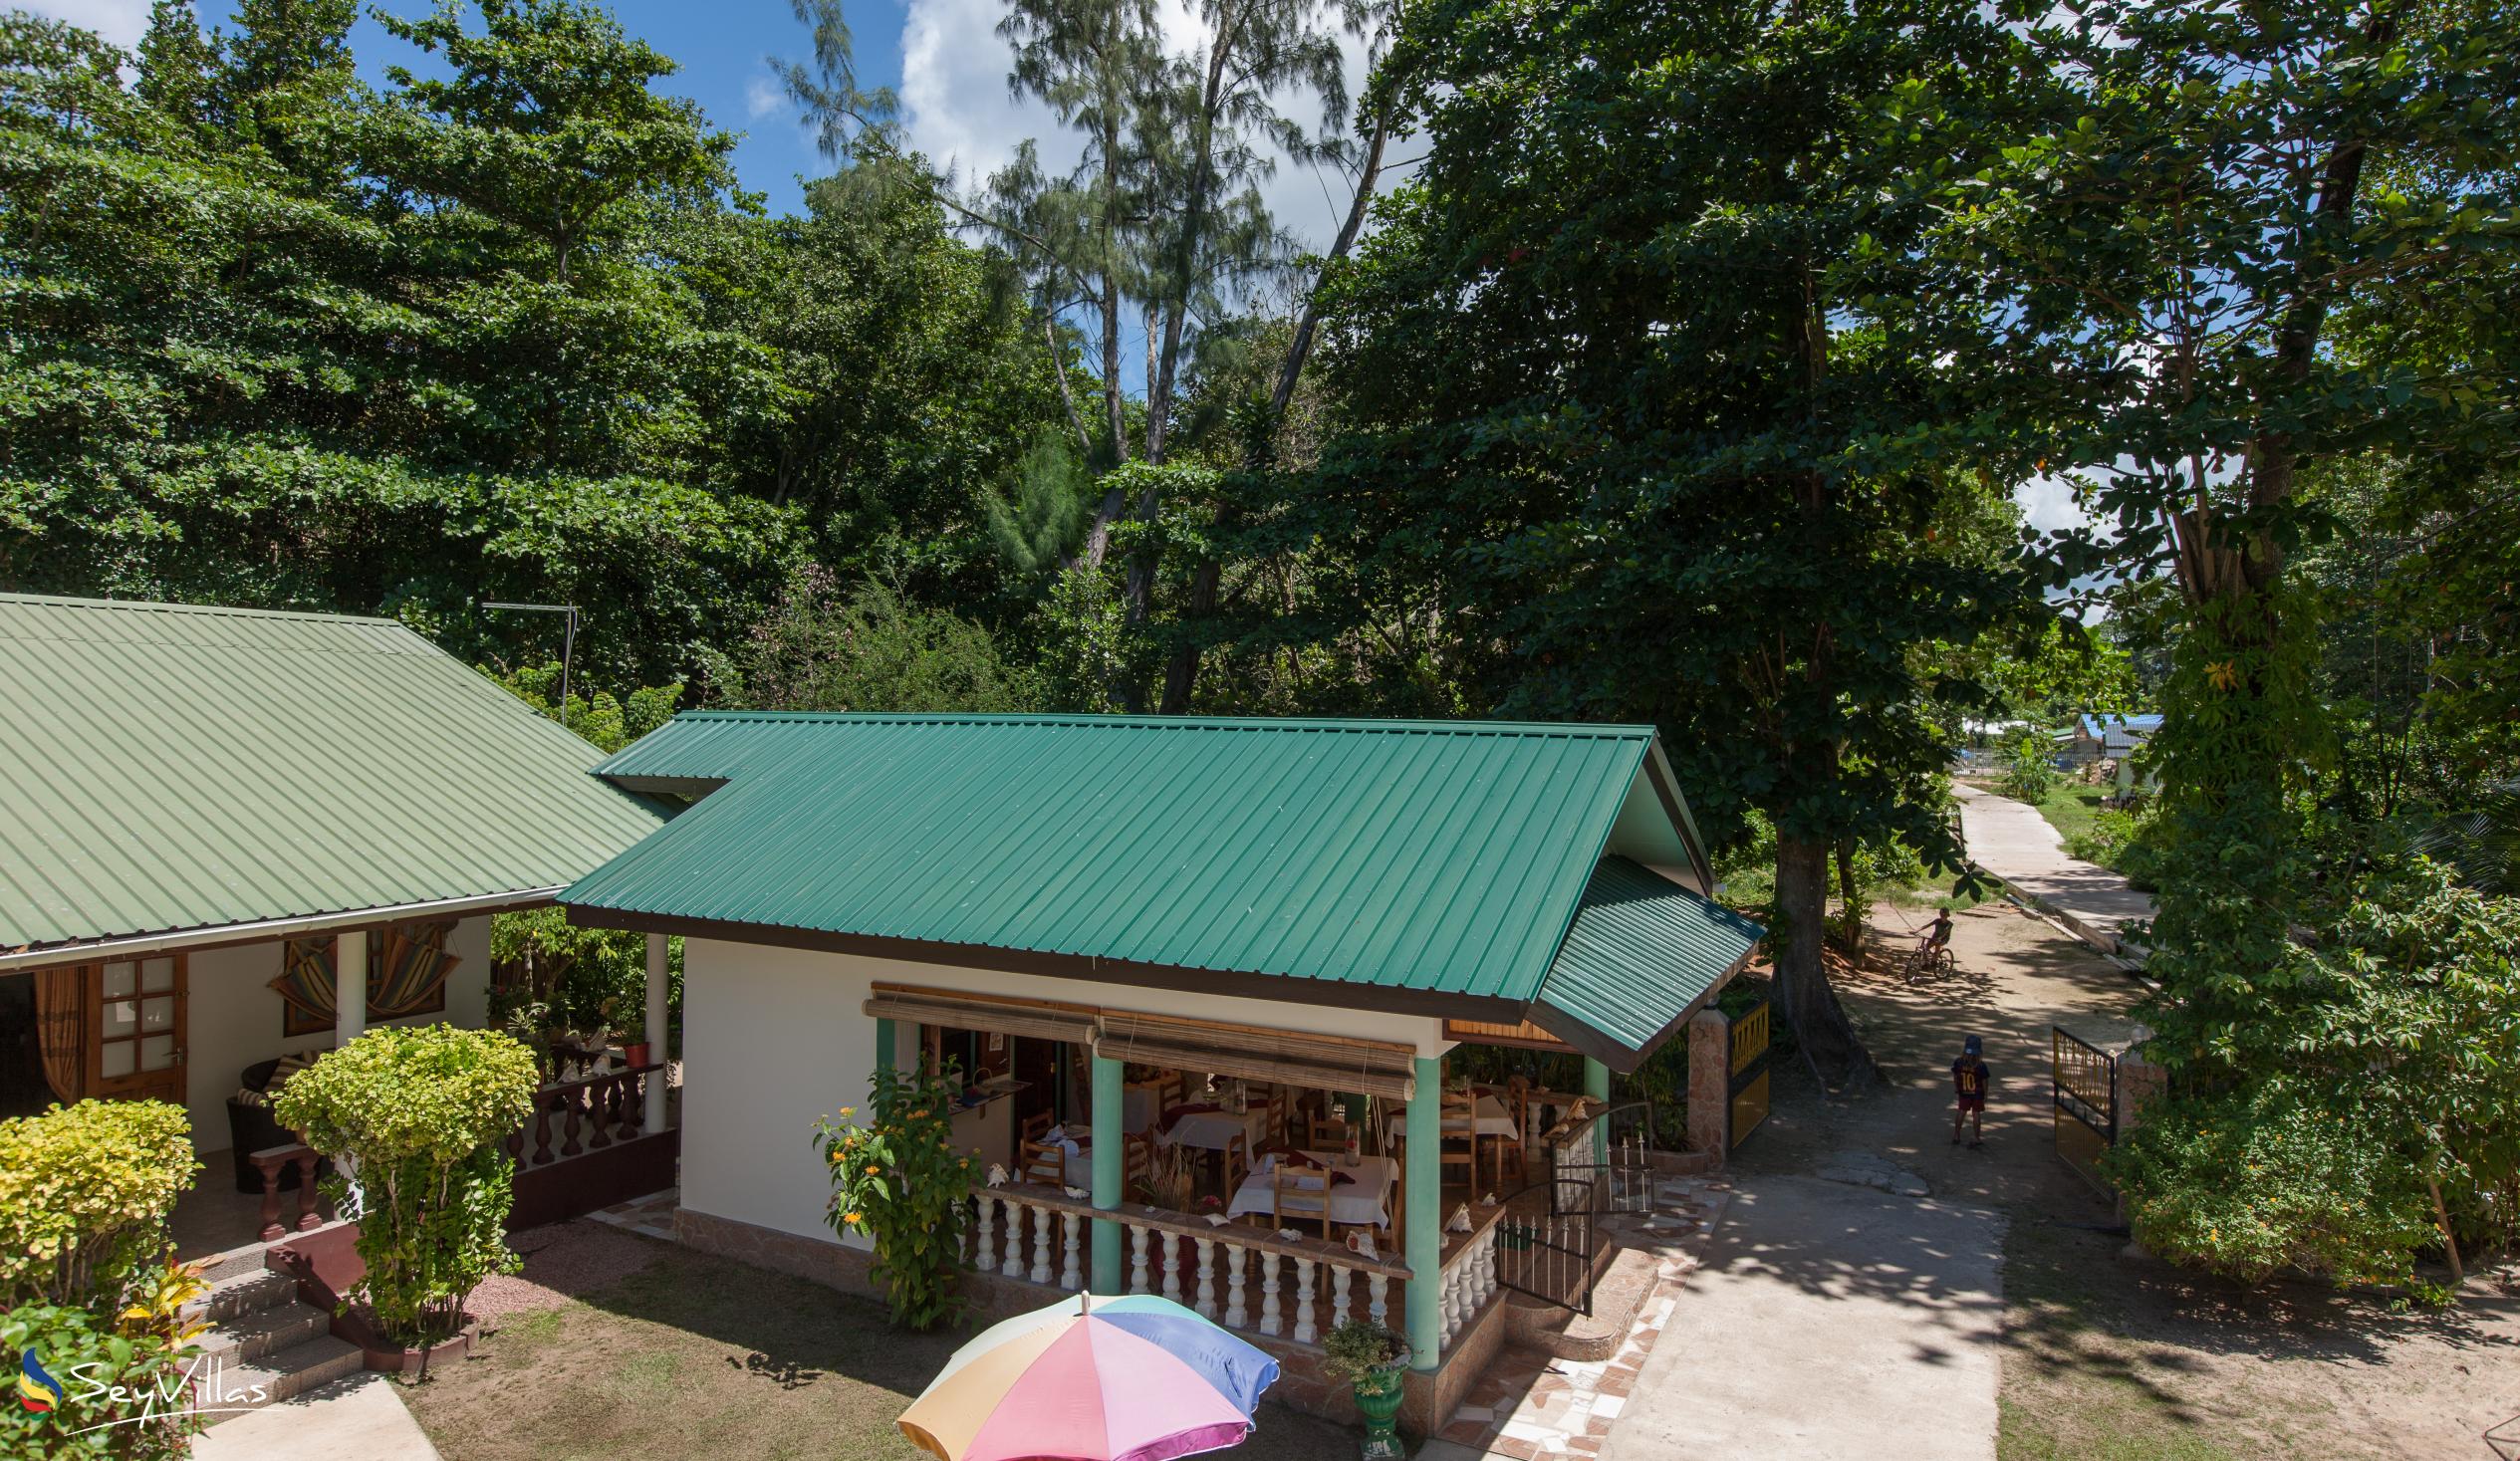 Foto 9: Tannette's Villa - Extérieur - La Digue (Seychelles)